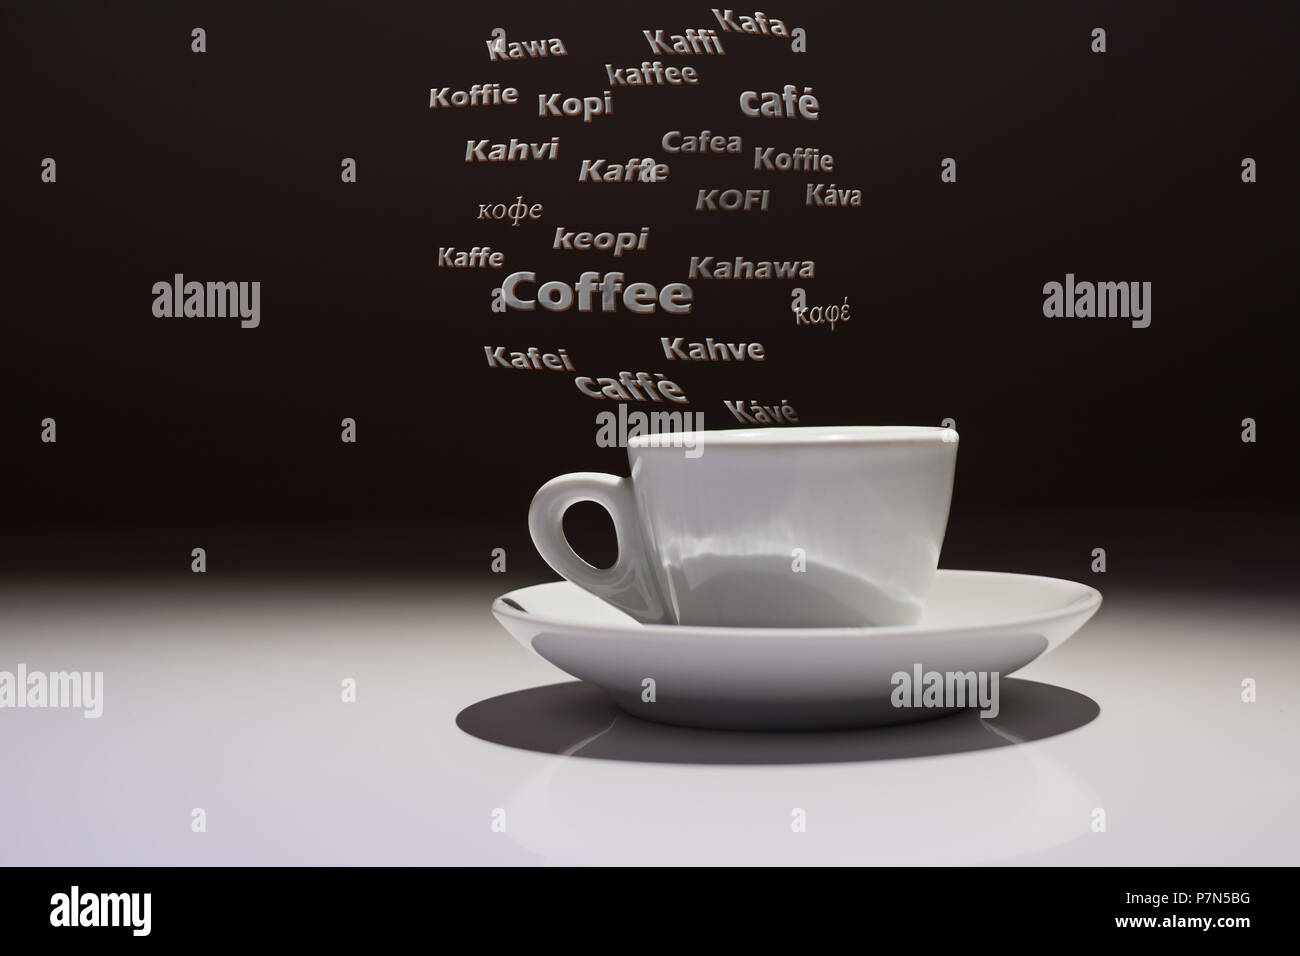 Kaffeetasse mit dem Wort Caffè in vielen Sprachen der Welt Stockfoto